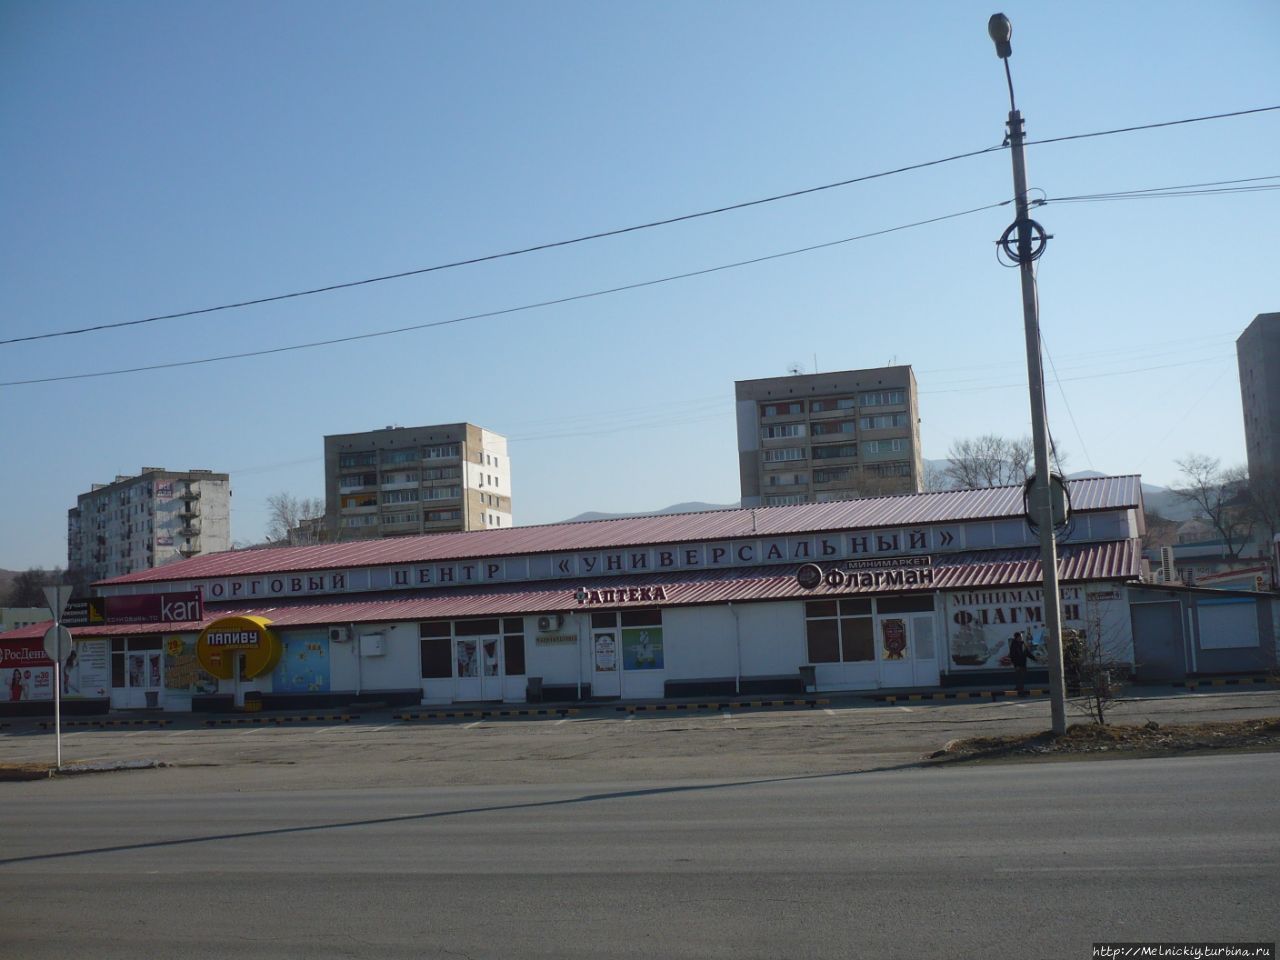 Небольшая остановка в приморском городке Фокино, Россия